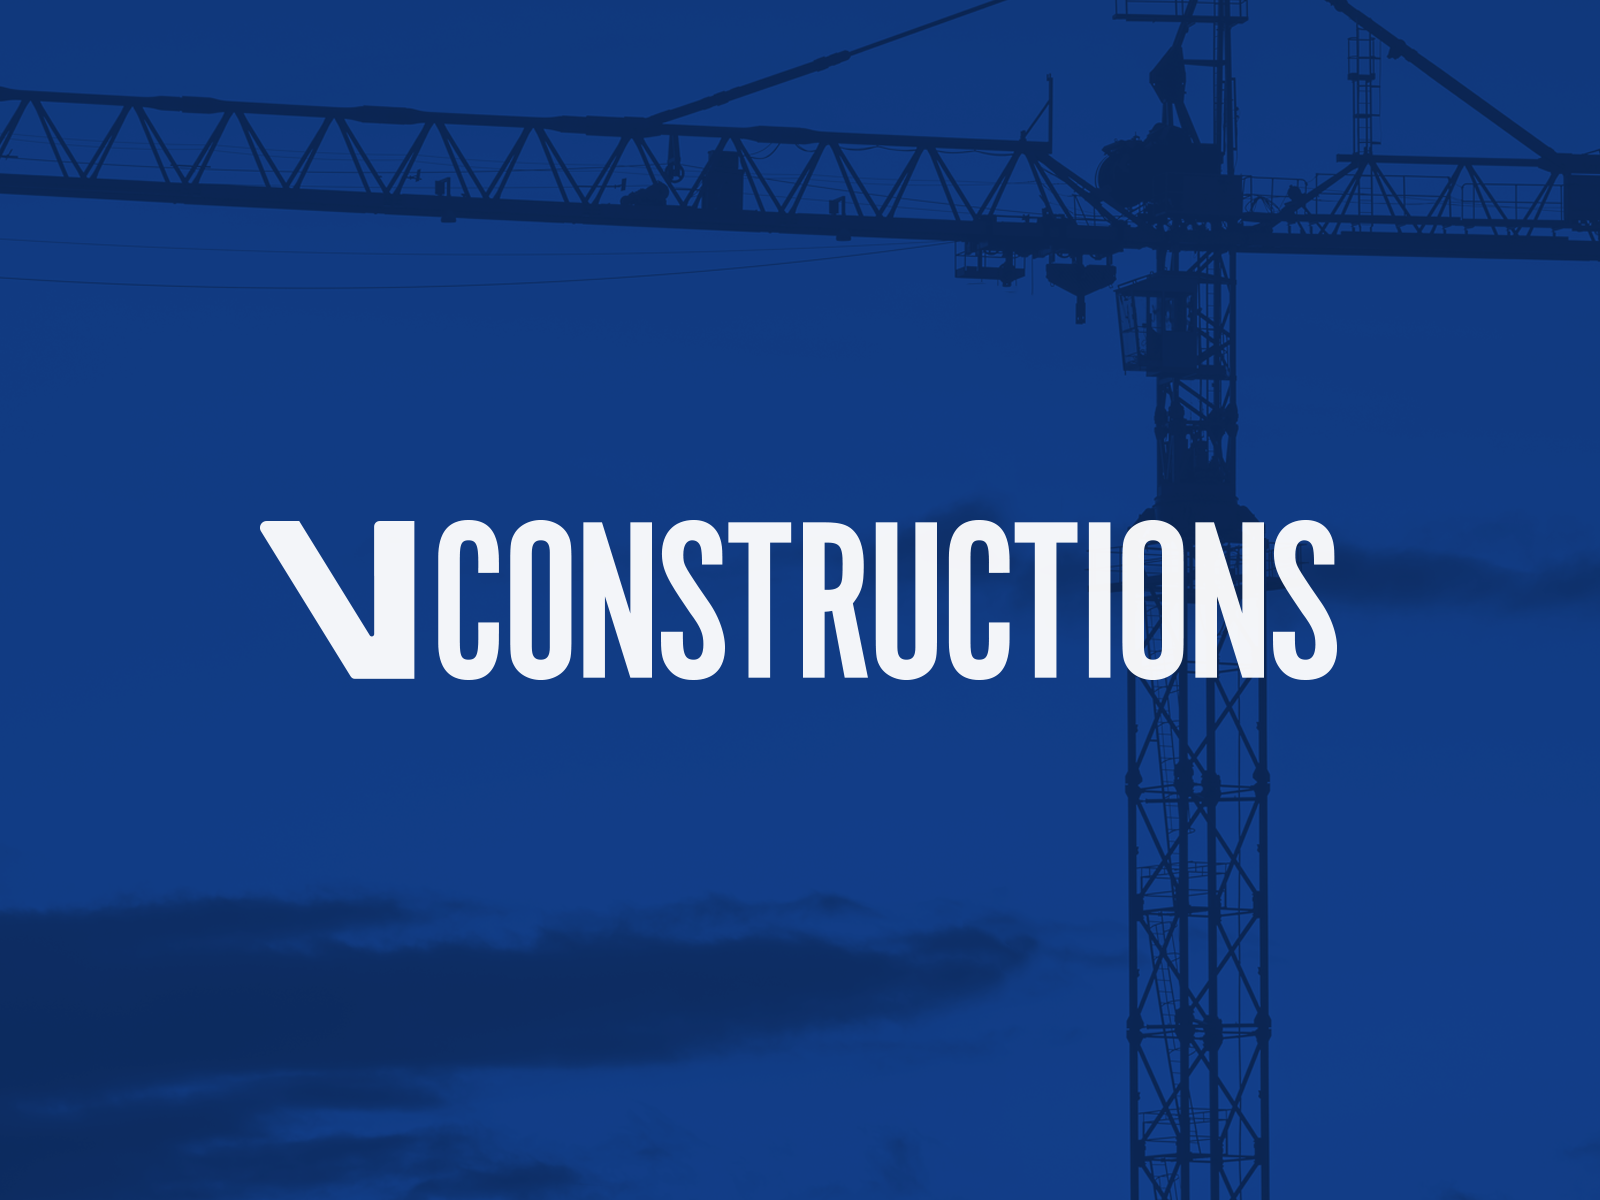 V Constructions